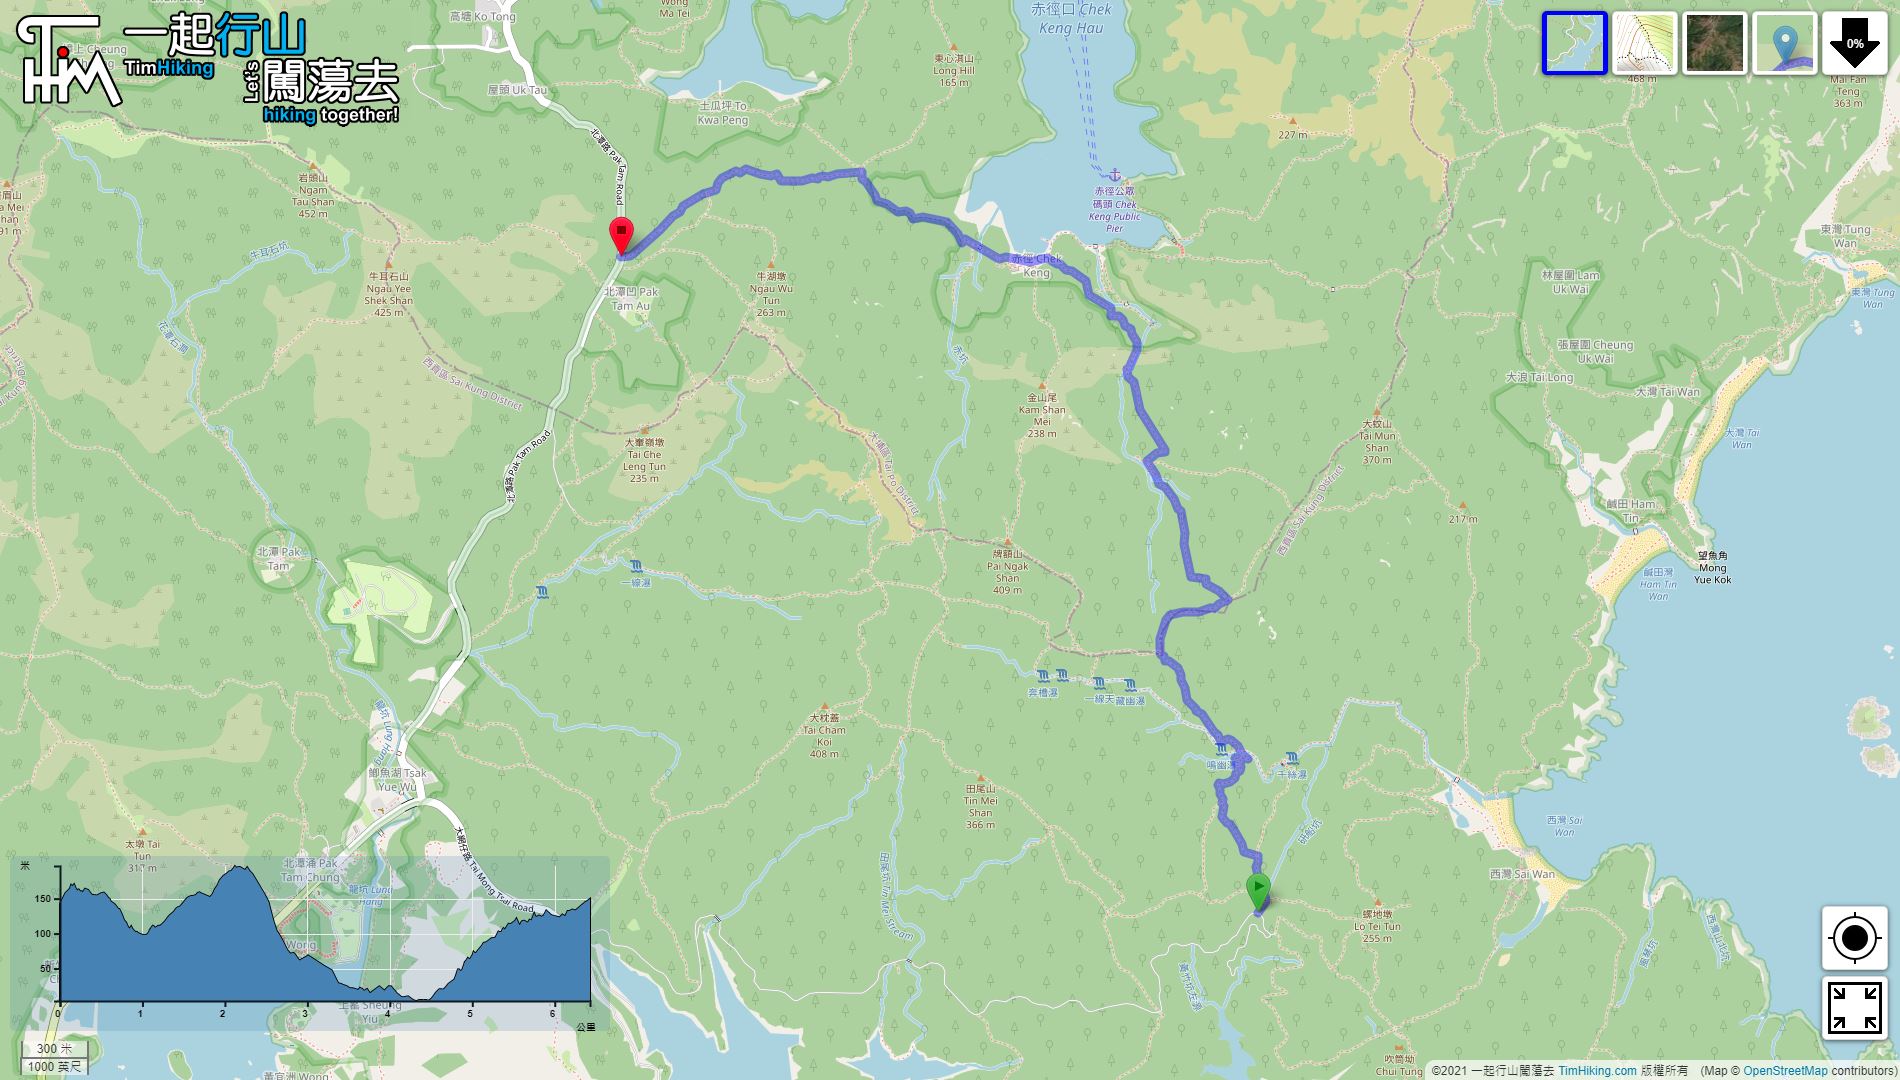 “鹿赤走廊”路线地图